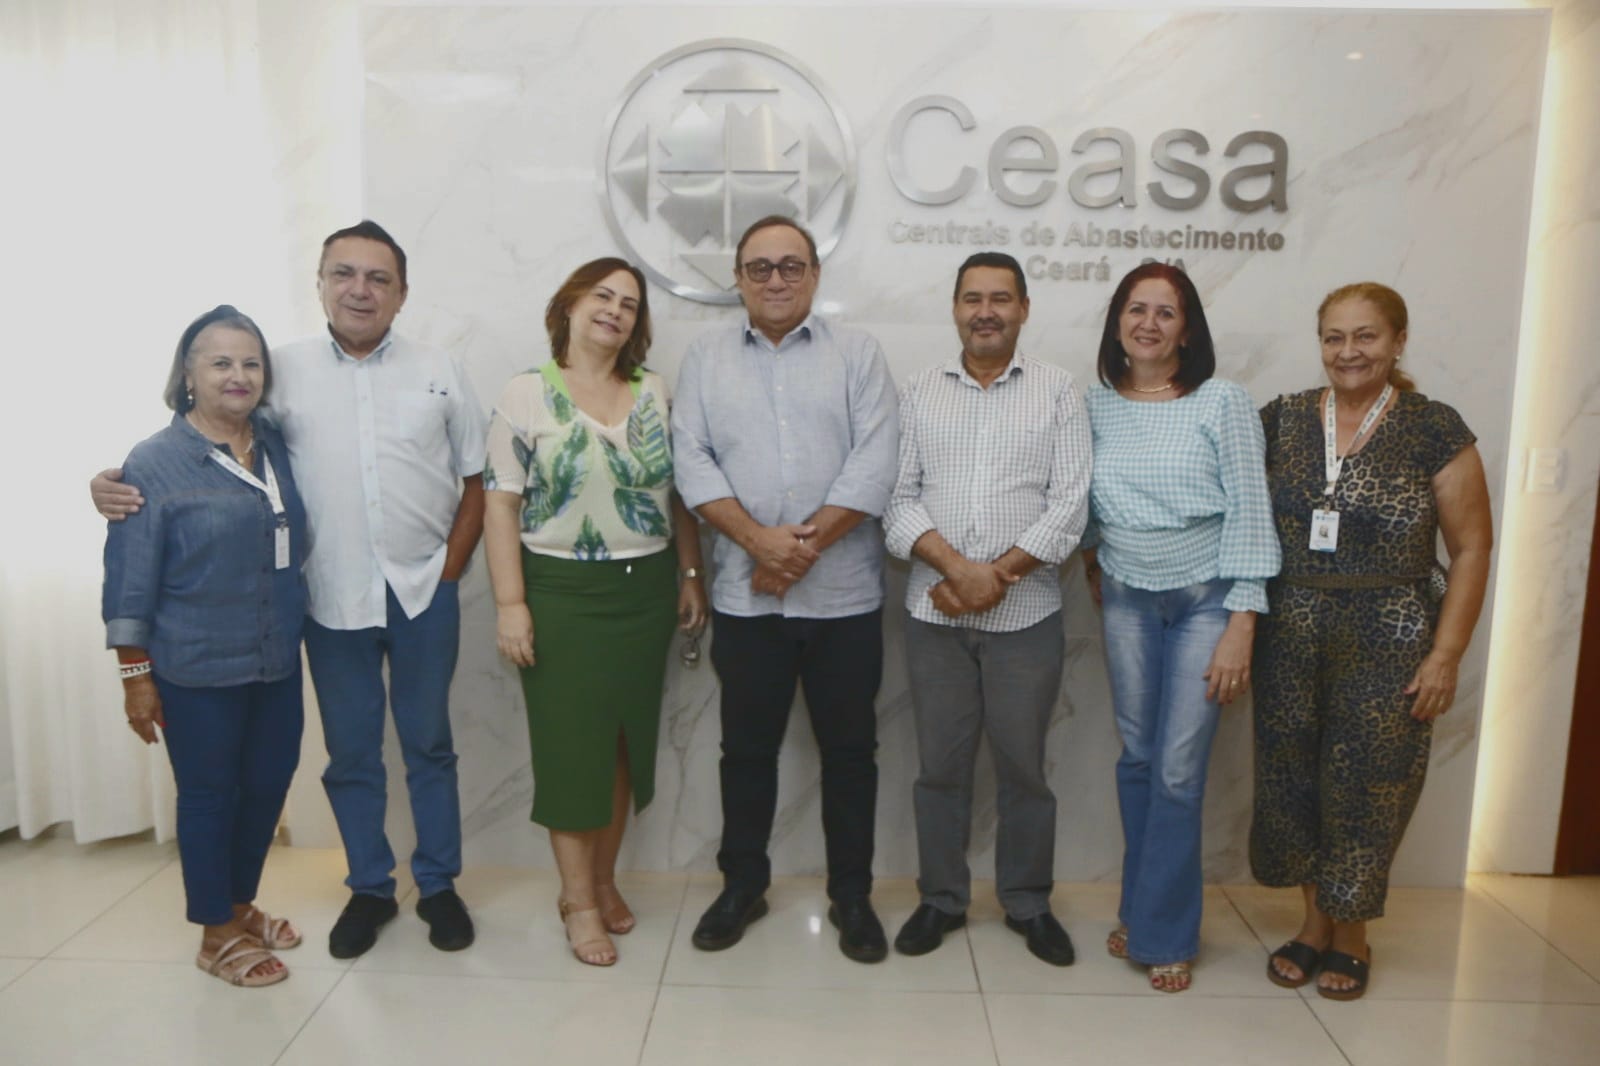 Reunião do Conselho de Administração aconteceu nesta quarta (3) na Ceasa em Maracanaú